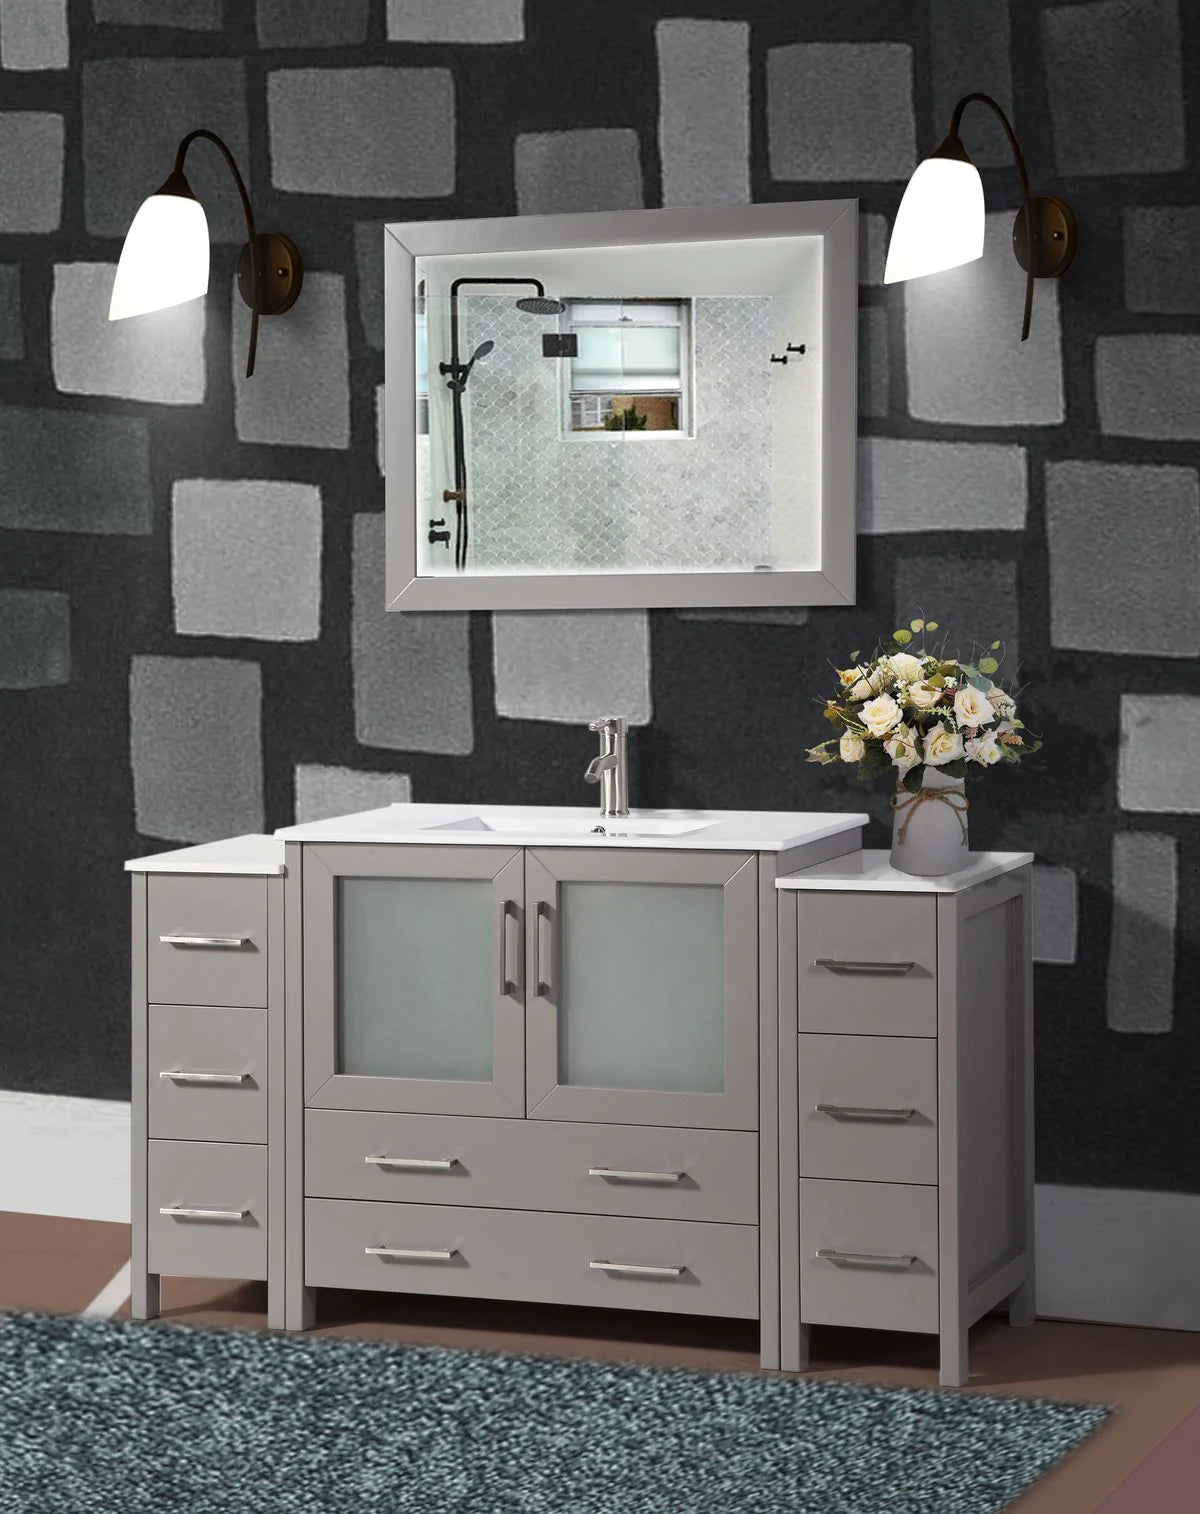 60 in. Single Sink Modern Bathroom Vanity Compact Set in Gray - Decohub Home